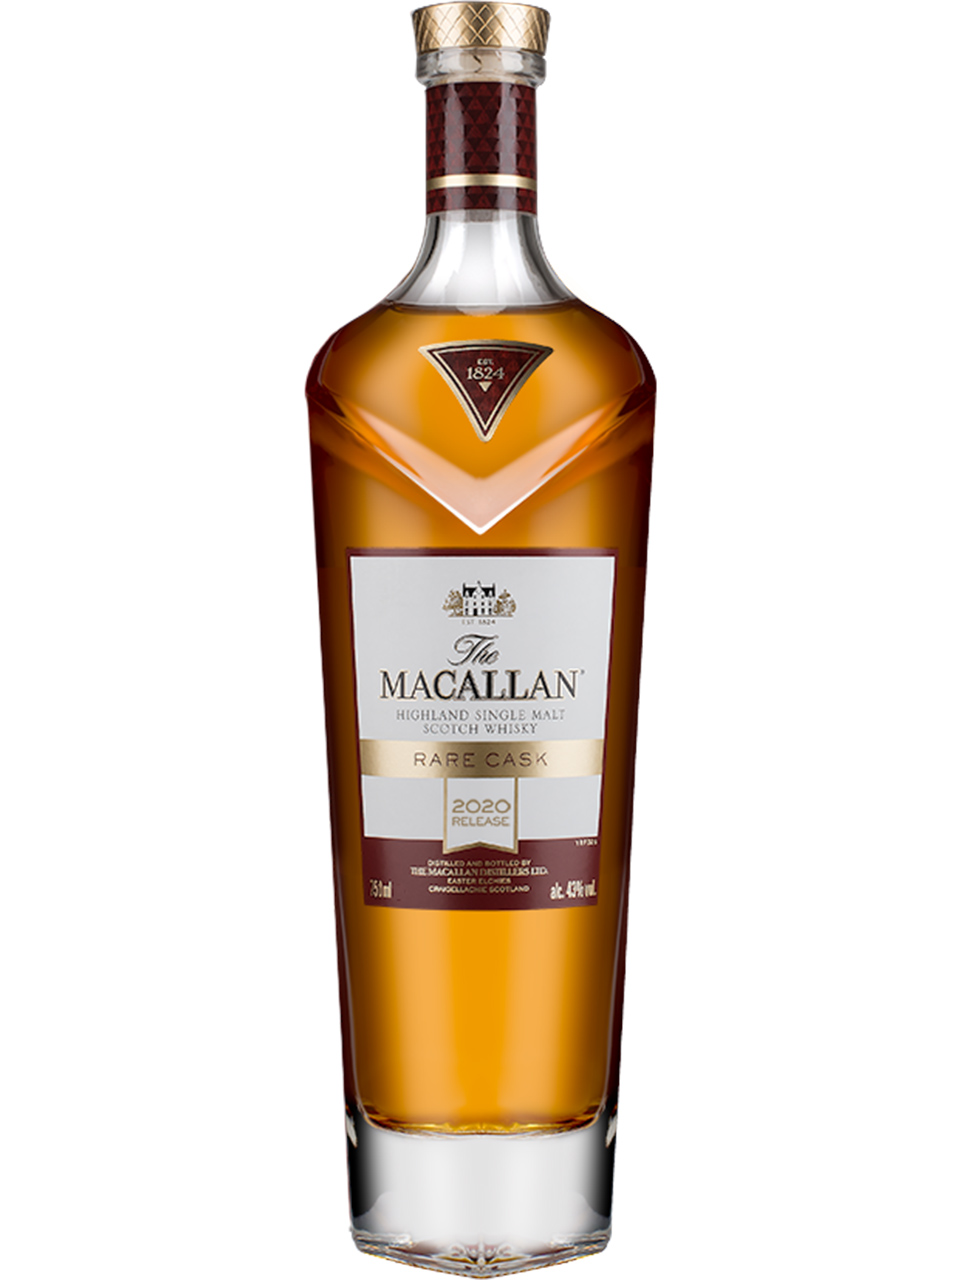 The Macallan Rare Cask Single Malt Scotch Whisky Newfoundland Labrador Liquor Corporation